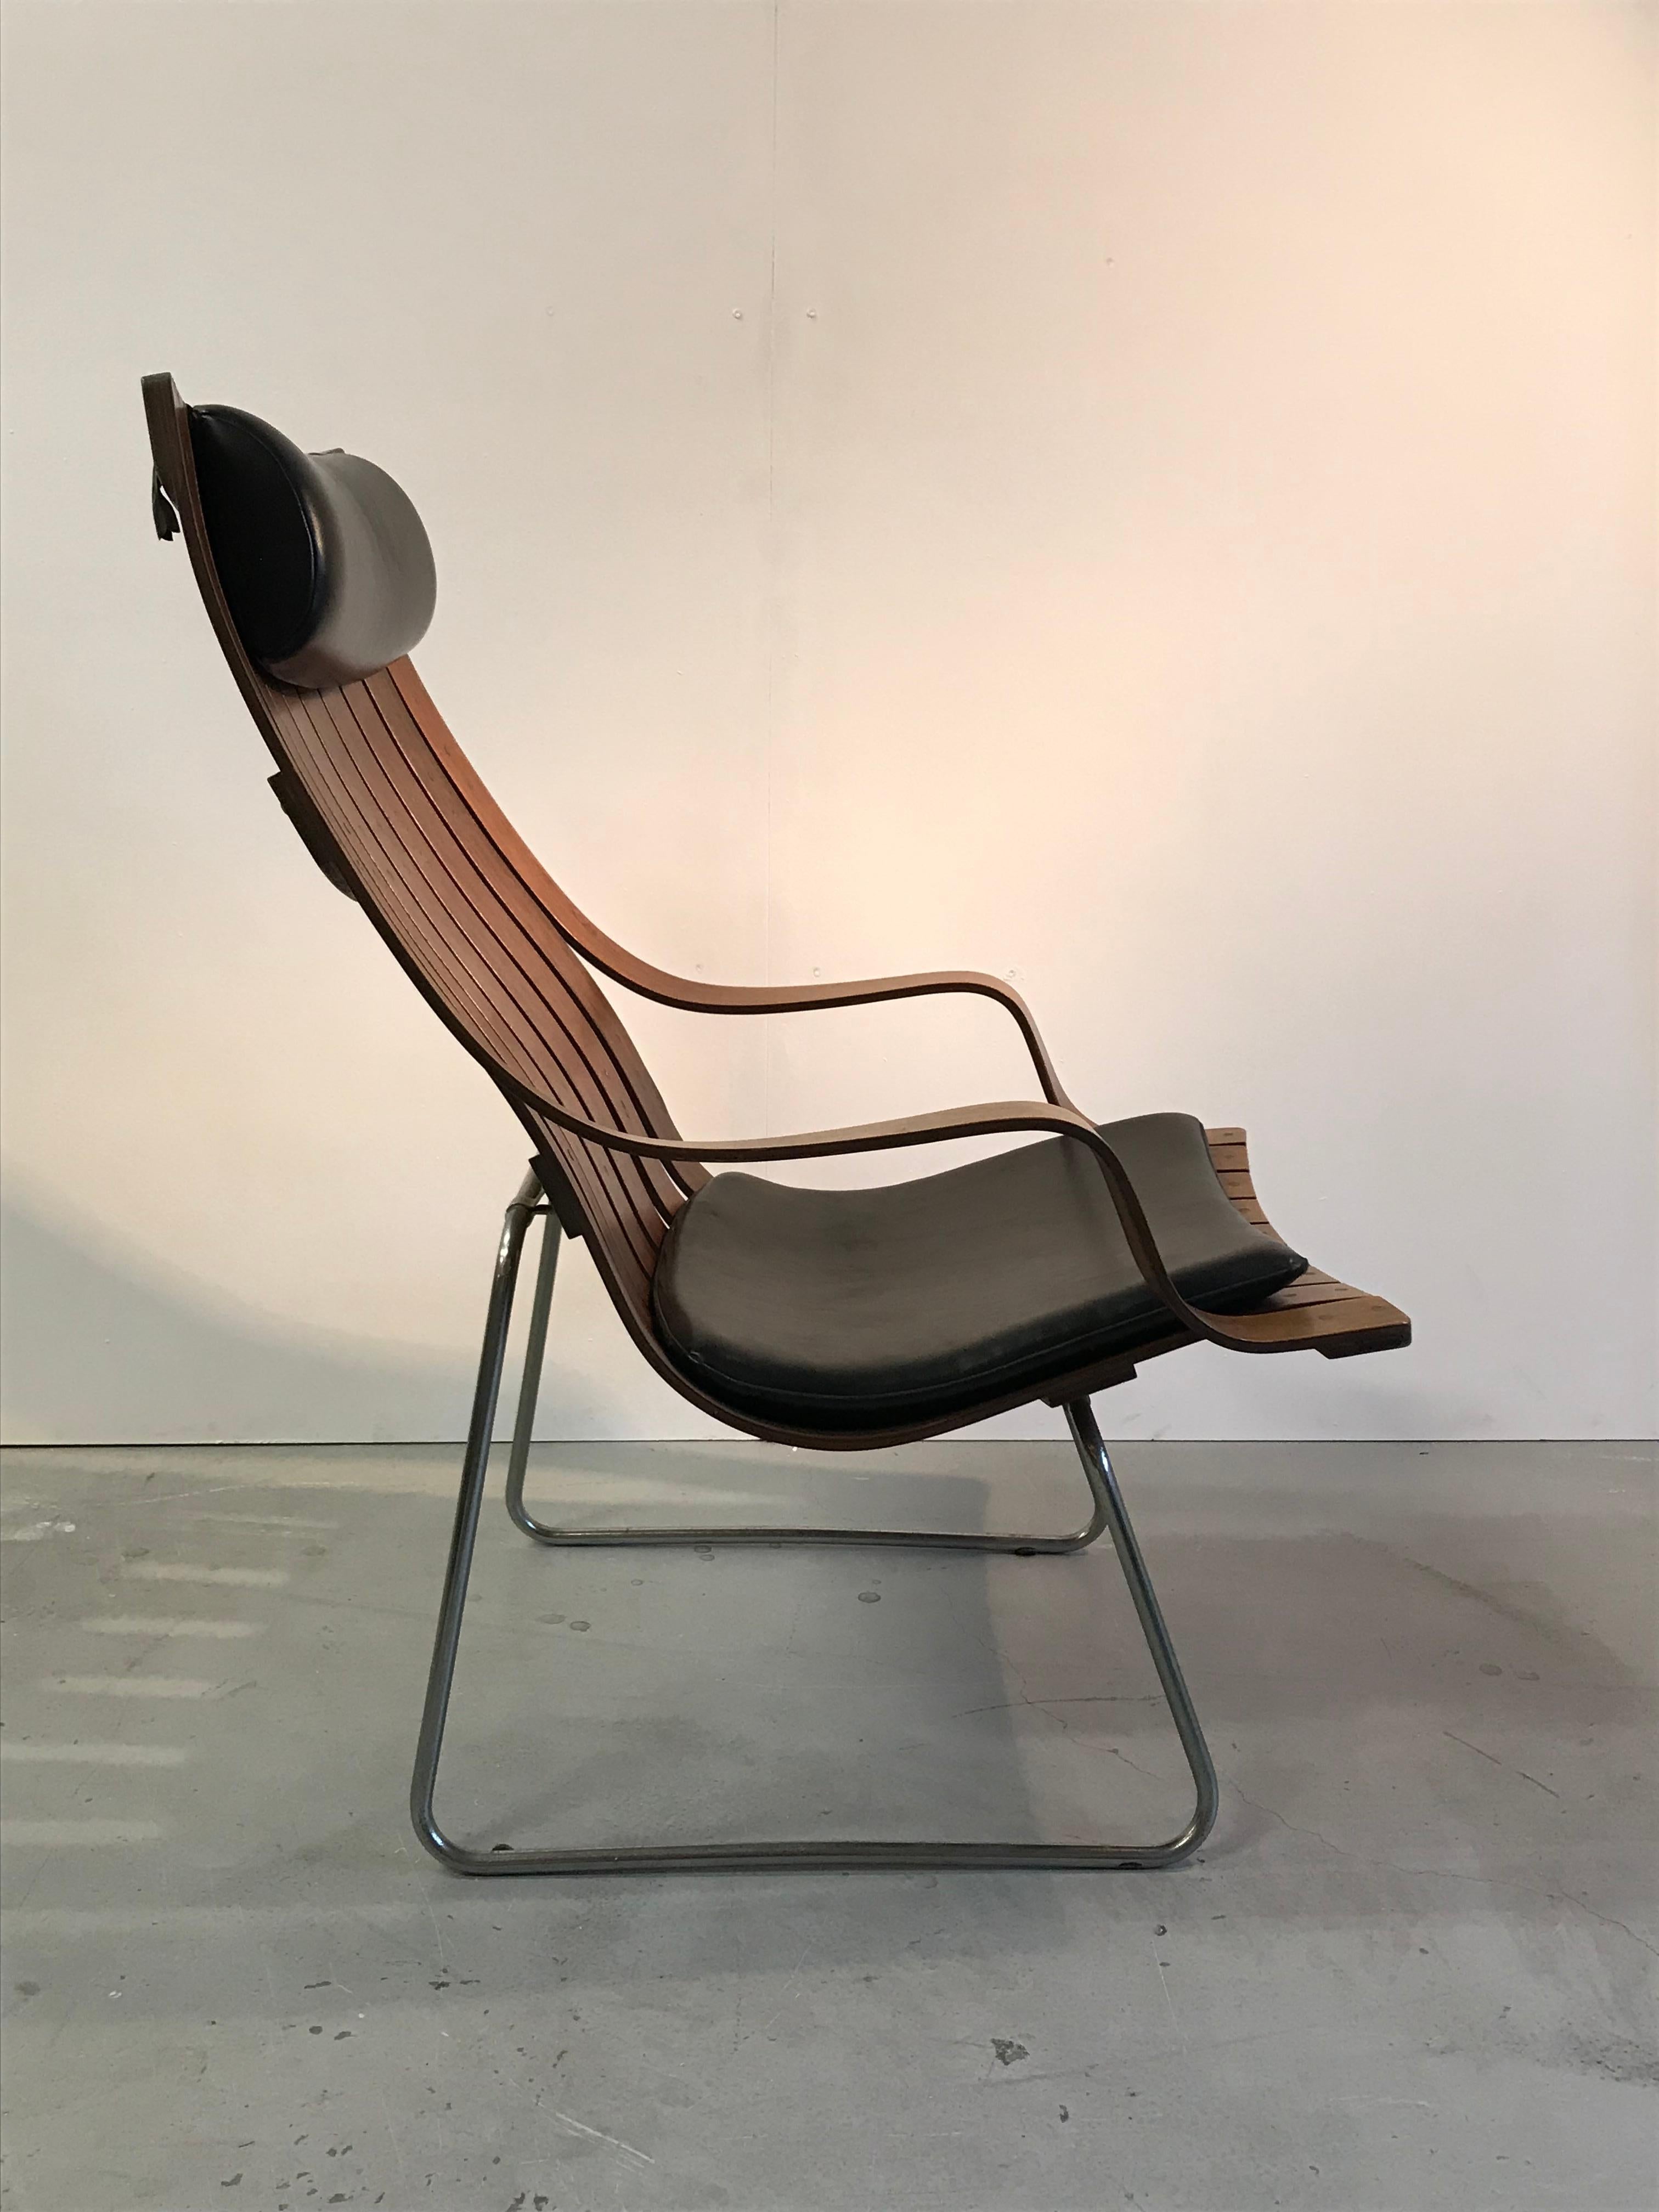 Besonderer Sessel von Hans Brattrud. Entworfen in den 1950er Jahren.
Das Design mit den vertikalen Rippen, die an horizontalen Schichtstoffplatten befestigt sind, macht es zu einer raffinierten Konstruktion, die es zu einem echten Blickfang macht.